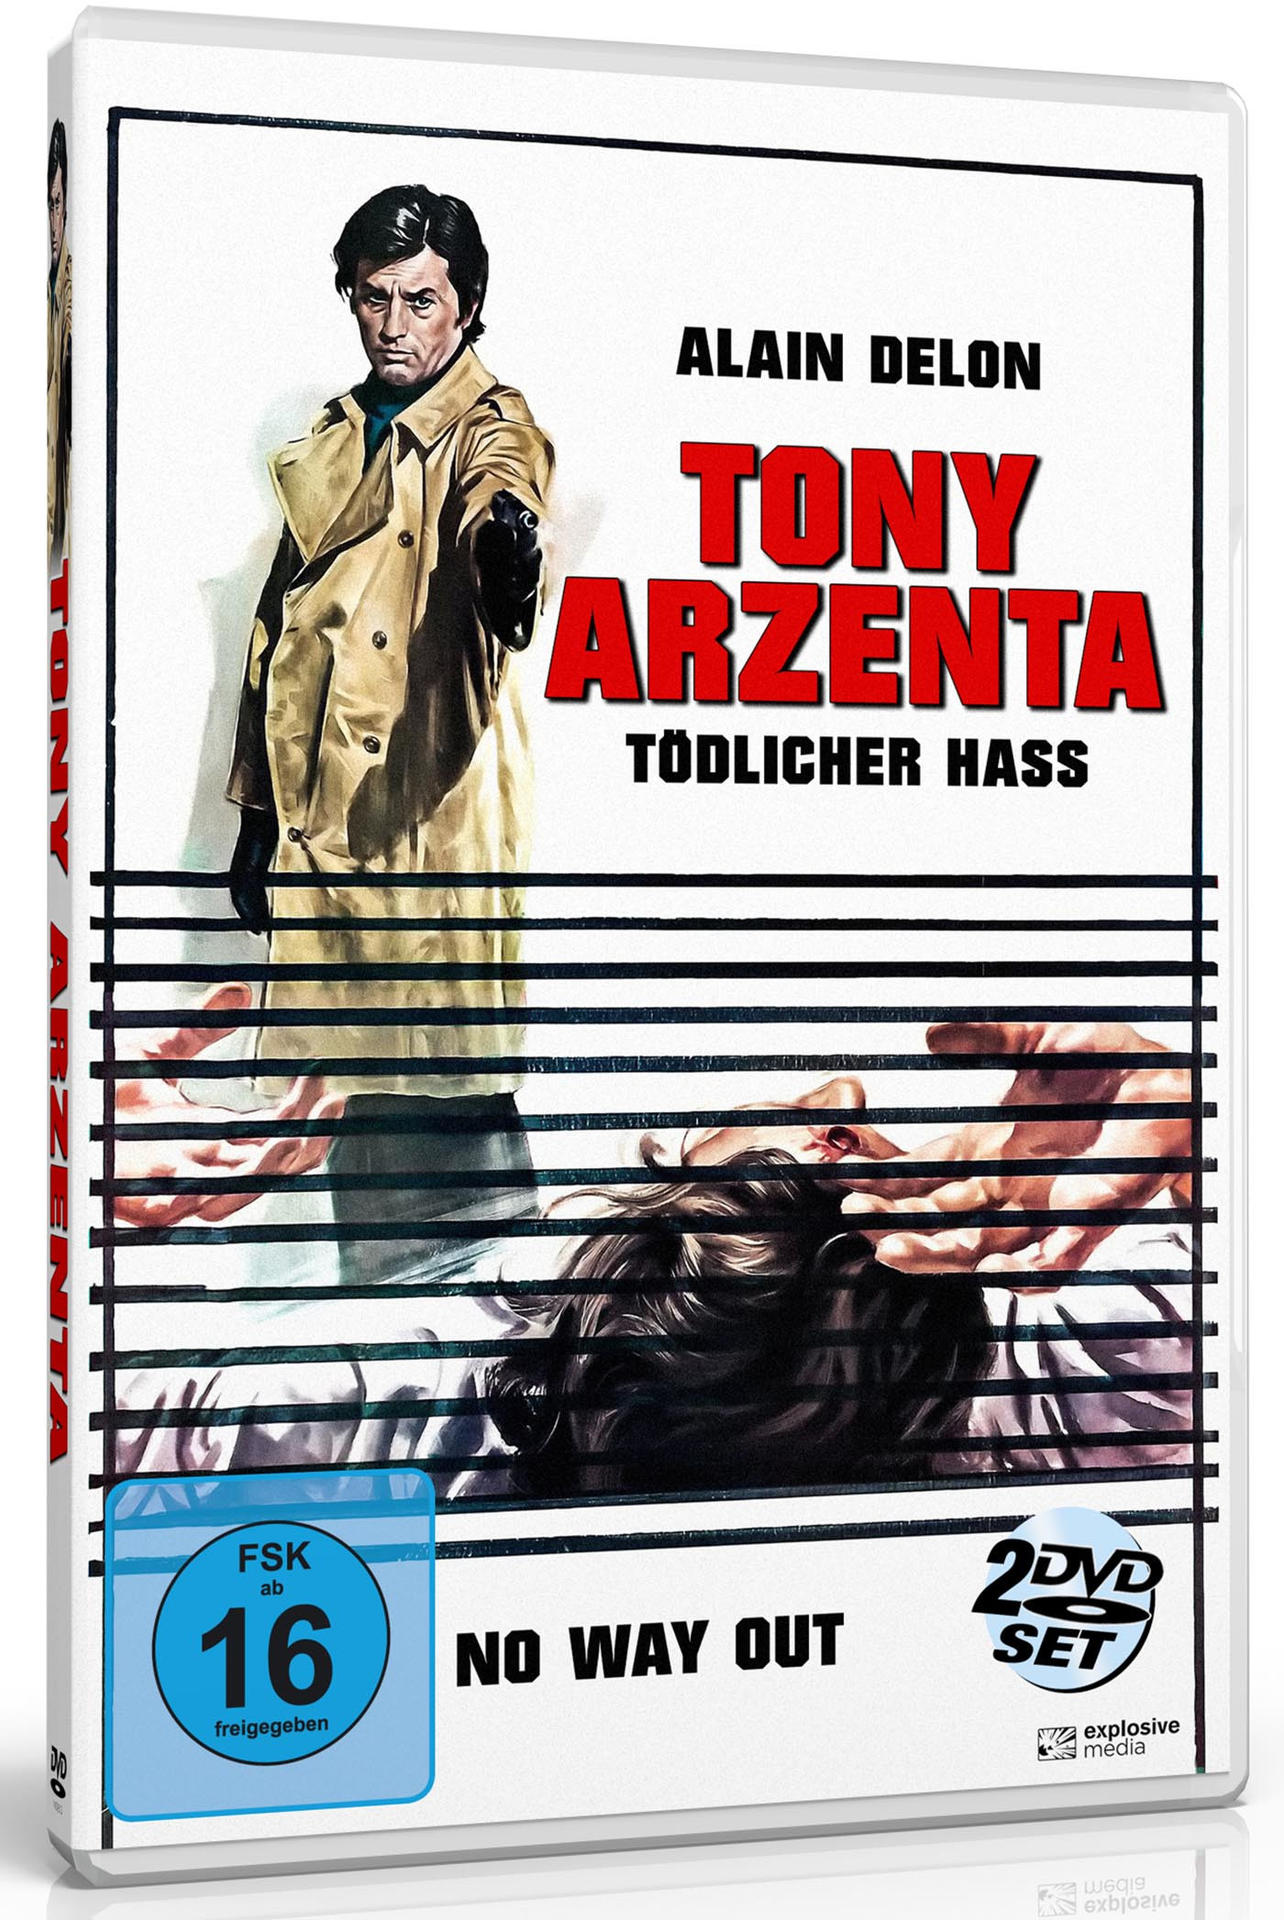 (Tödlicher DVD Hass) Tony Arzenta